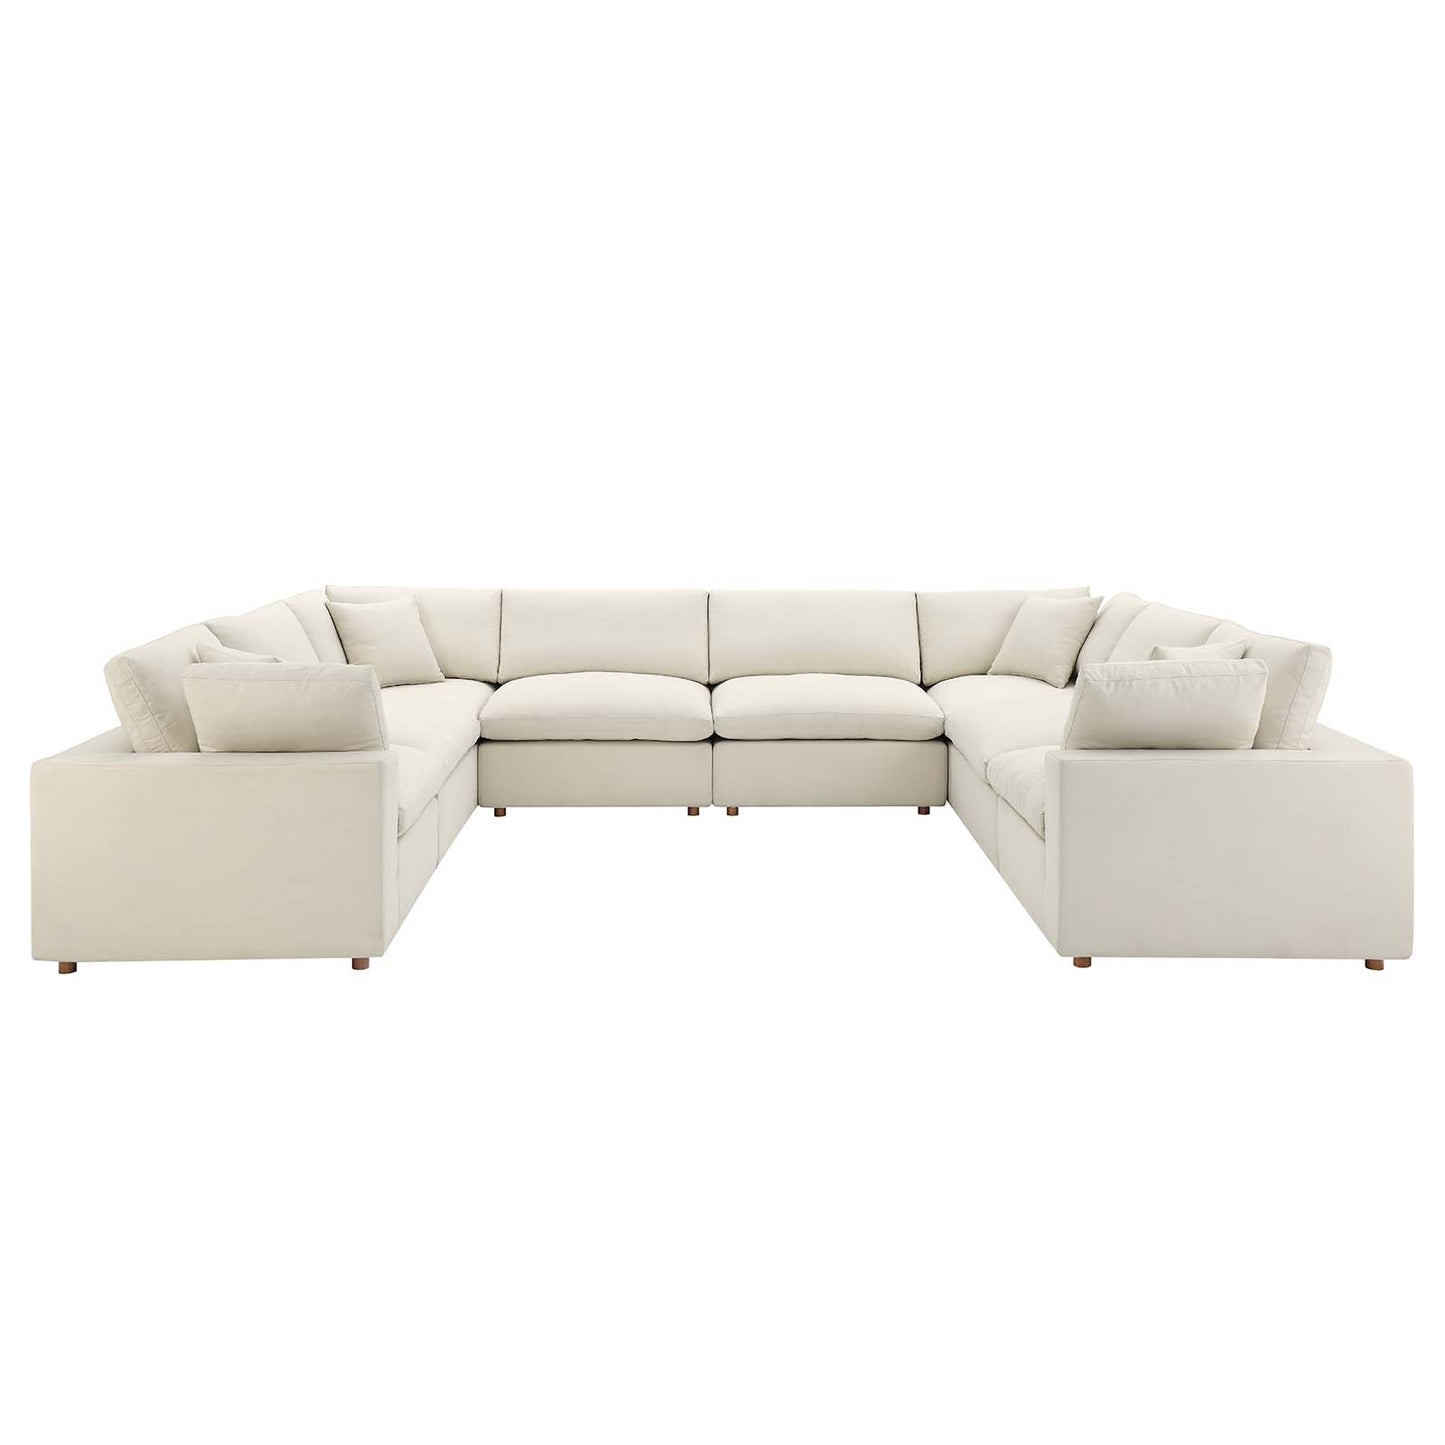 Commix Down Filled Overstuffed 8-Piece Sectional Sofa Light Beige EEI-3363-LBG